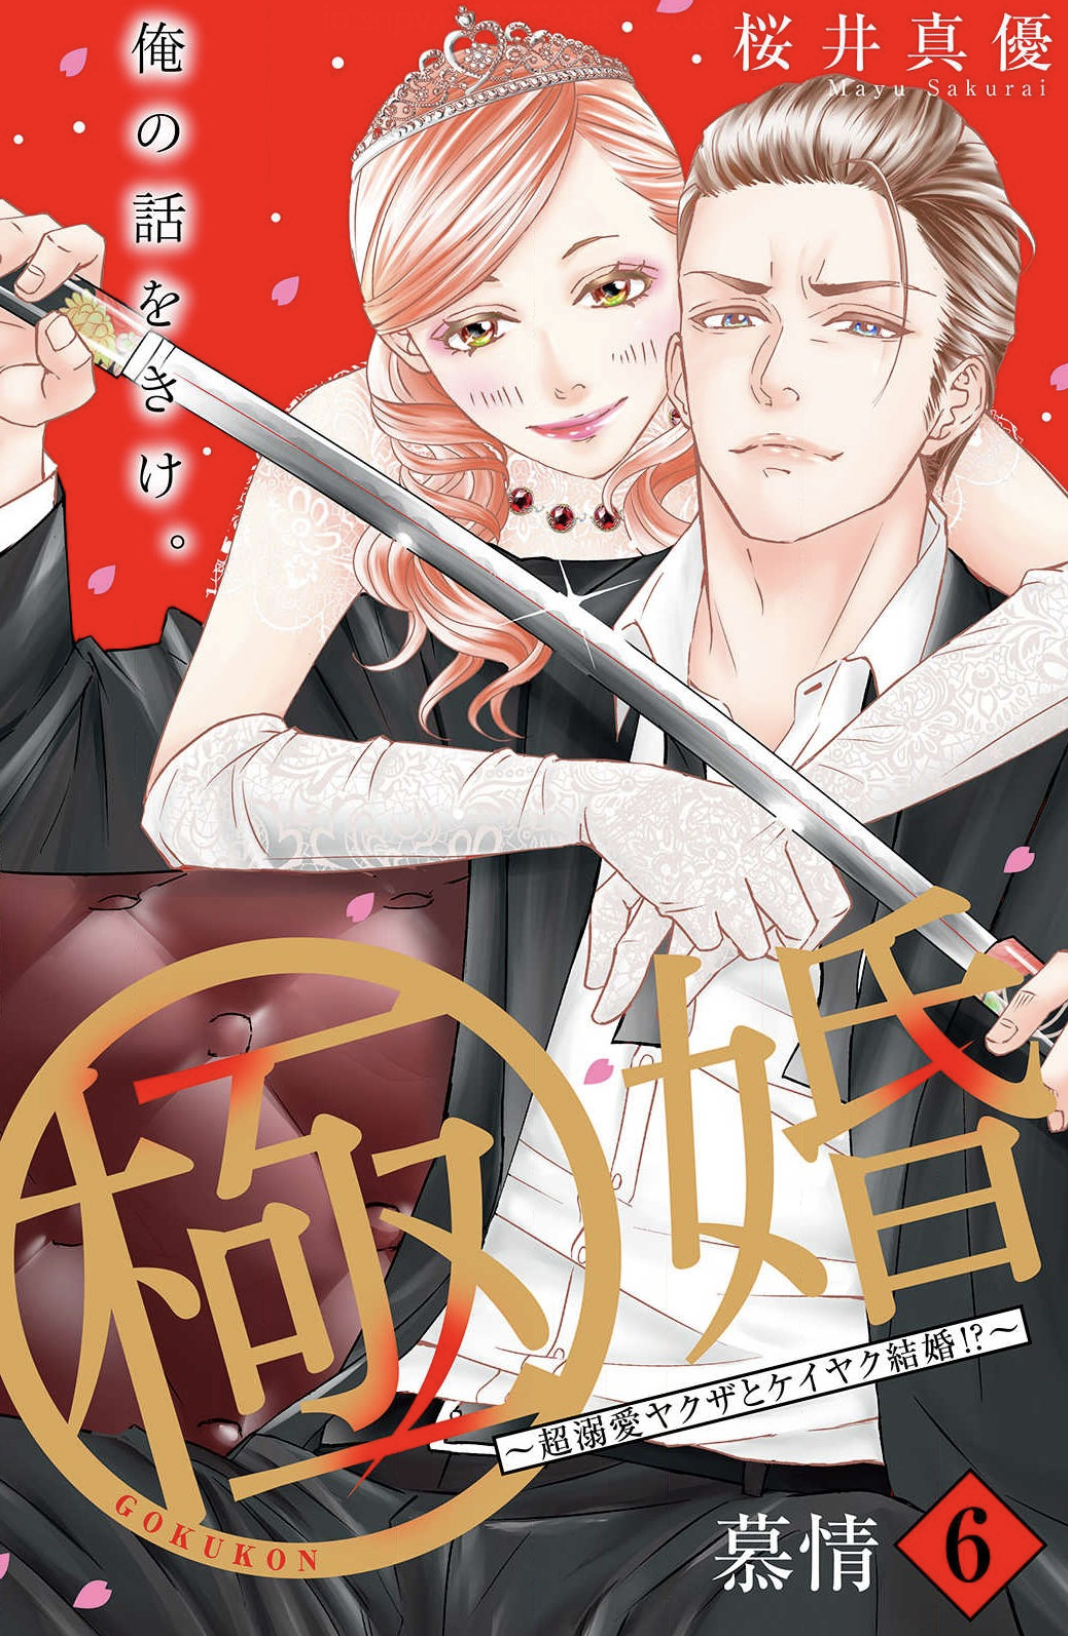 極婚 超溺愛ヤクザとケイヤク結婚 分冊版6巻はzipやrar Lhscanで令和現在も無料で読めるの Manga Newworld